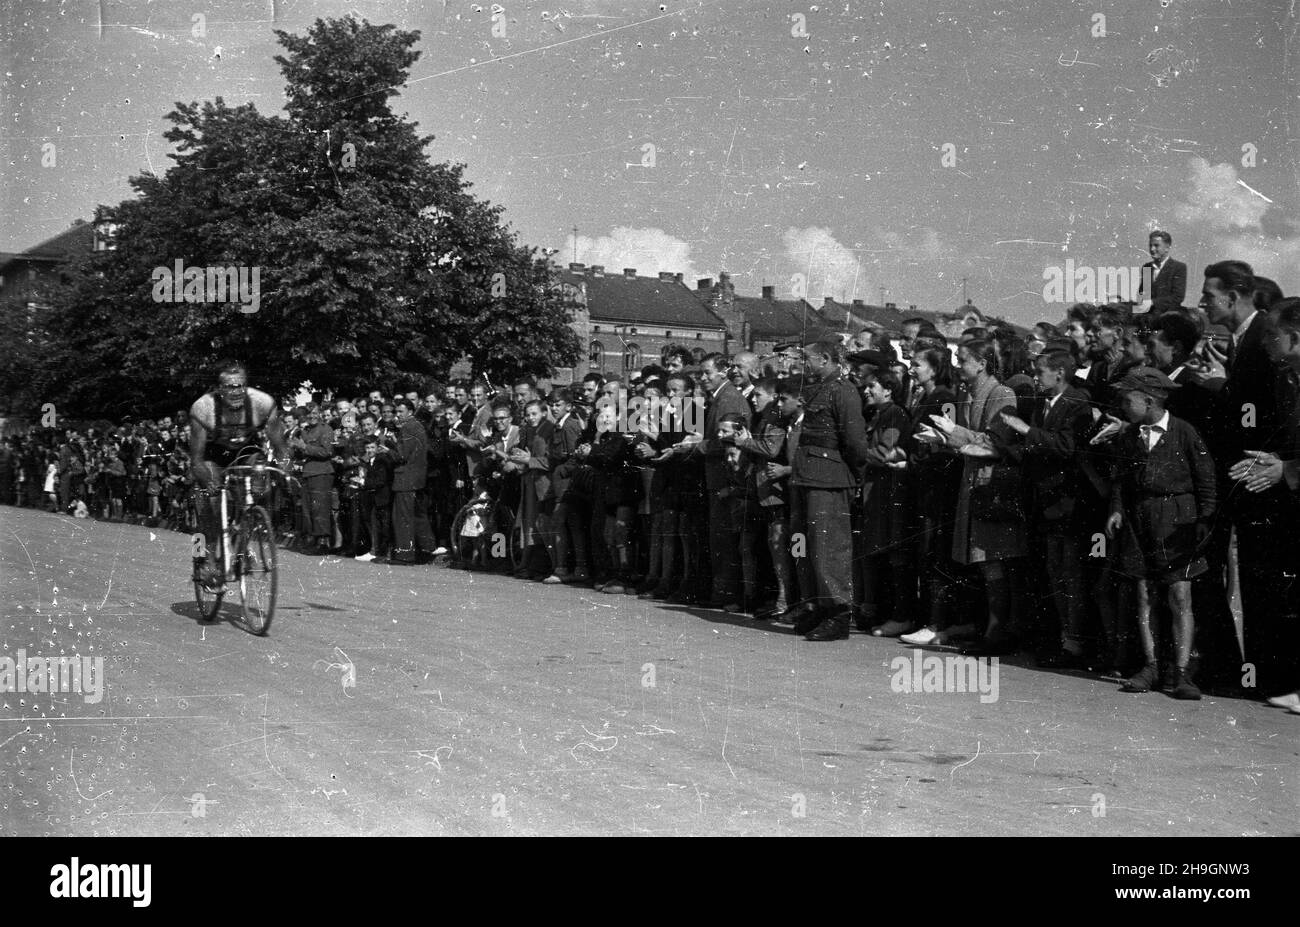 Kraków, 1948-06-30. Od 22 czerwca do 4 lipca odbywa³ siê VII Kolarski Wyœcig Dooko³a Polski (Tour de Pologne). VIII etap z Bytomia do Krakowa (140 km) koñczy³ siê na stadionie klubu sportowego Cracovia. Nz. kolarz szwedzki na trasie wyœcigu.  pw  PAP        Cracow, June 30, 1948. The 7th Tour de Pologne cycling race was held from June 22 to July 4. The 8th stage from Bytom to Cracow (140 km) ended at the stadium of the Cracovia sports club. Pictured: a Swedish cyclist.   pw  PAP Stock Photo